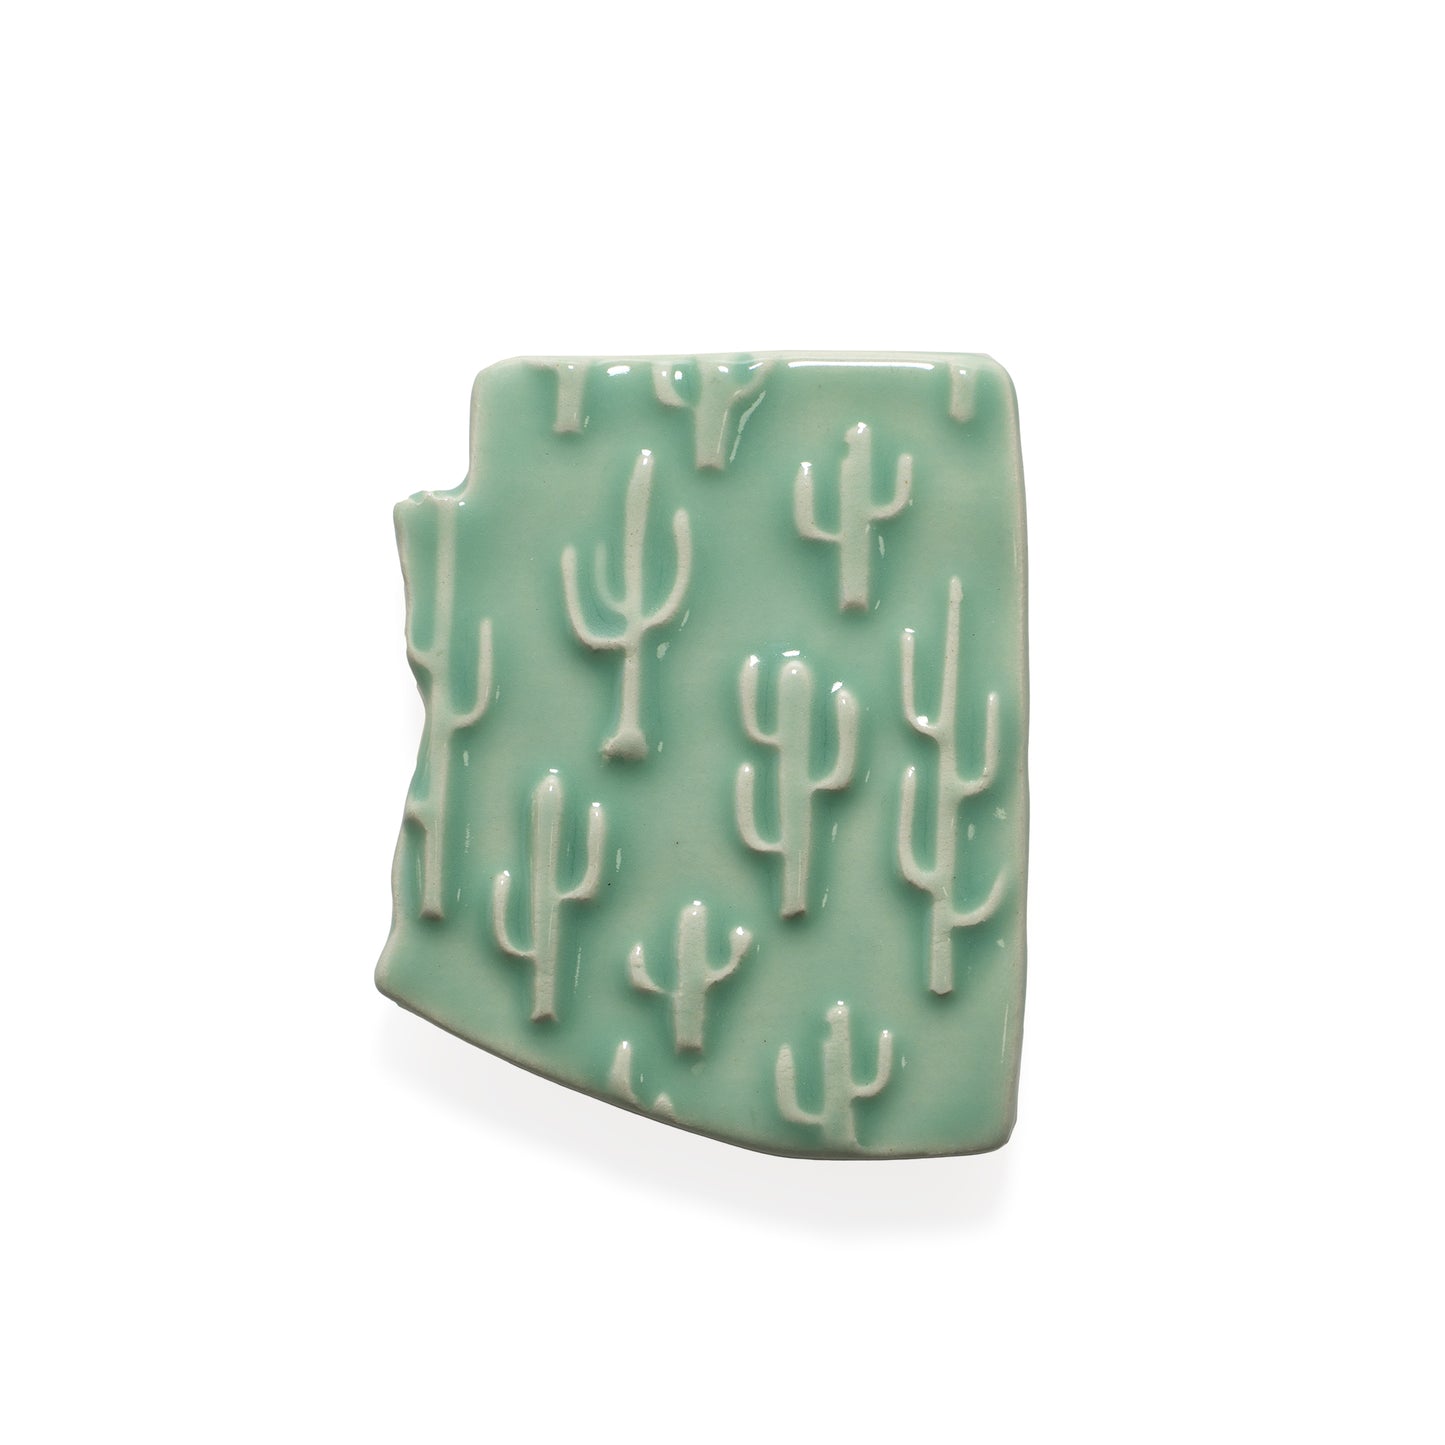 Handmade Ceramic Saguaros Cactus Magnet